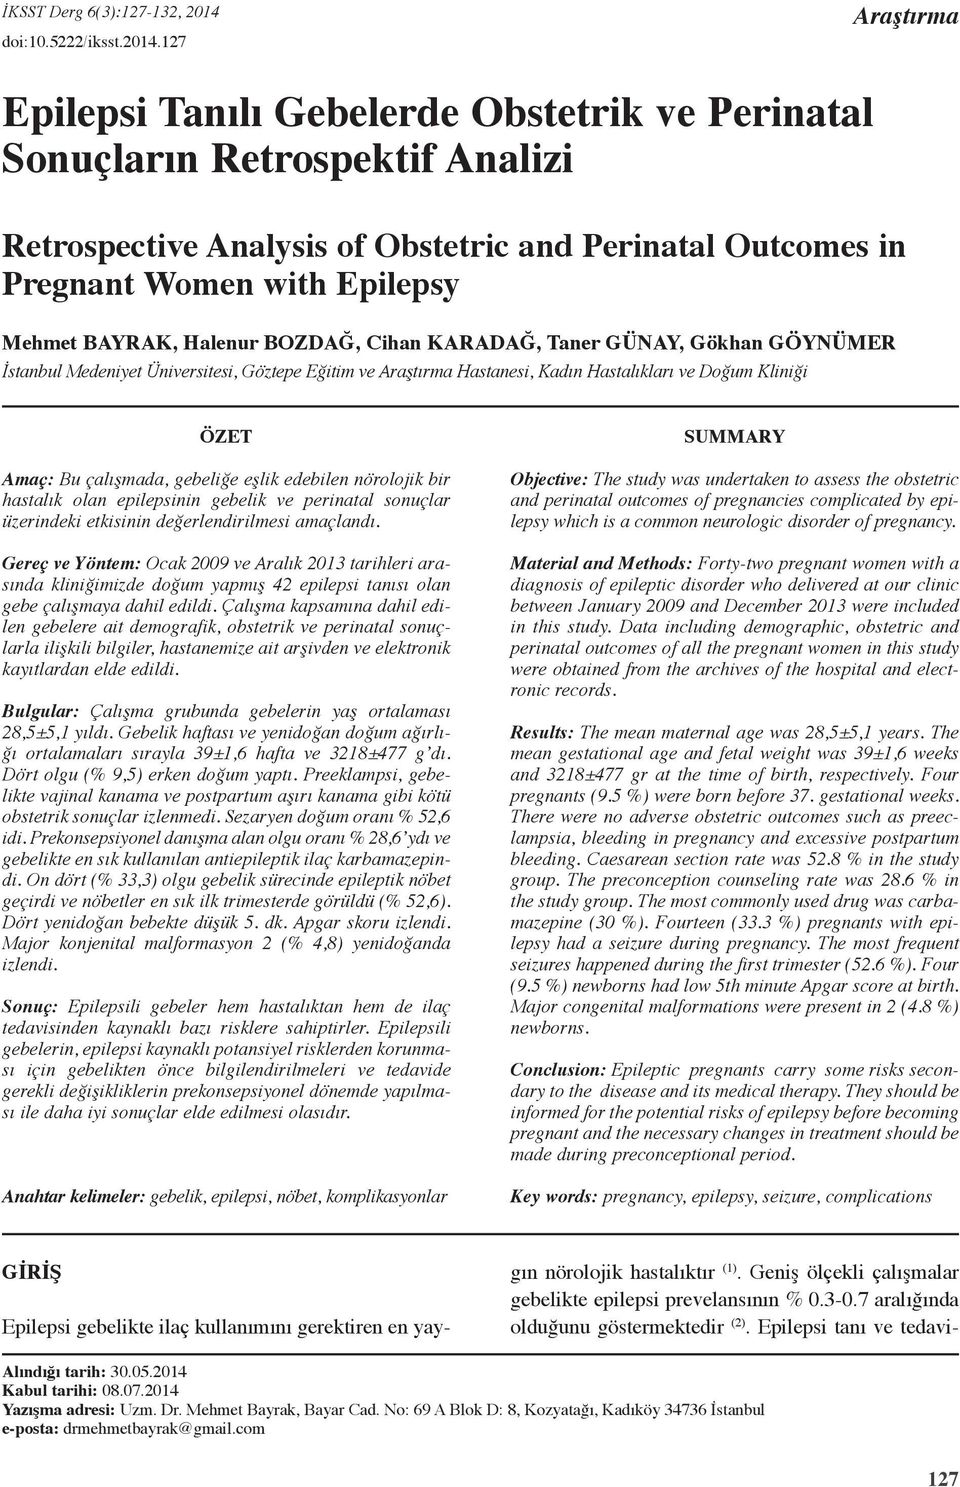 7 Araştırma Epilepsi Tanılı Gebelerde Obstetrik ve Perinatal Sonuçların Retrospektif Analizi Retrospective Analysis of Obstetric and Perinatal Outcomes in Pregnant Women with Epilepsy Mehmet Bayrak,